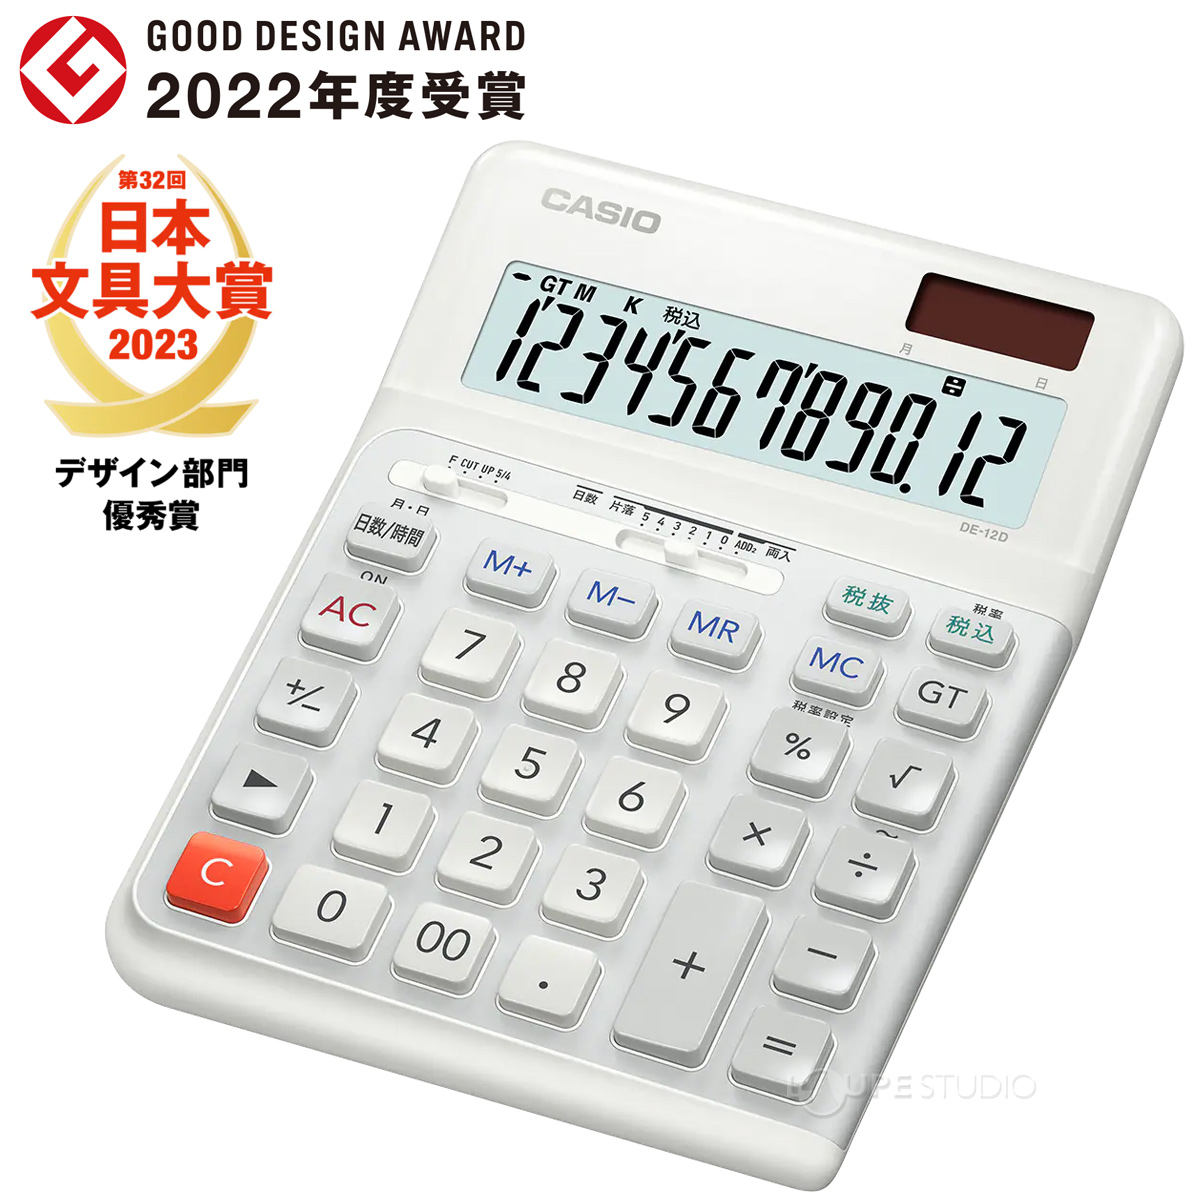 日本文具大賞 2023年 デザイン部門受賞品 電卓 カシオ 12桁 人間工学 